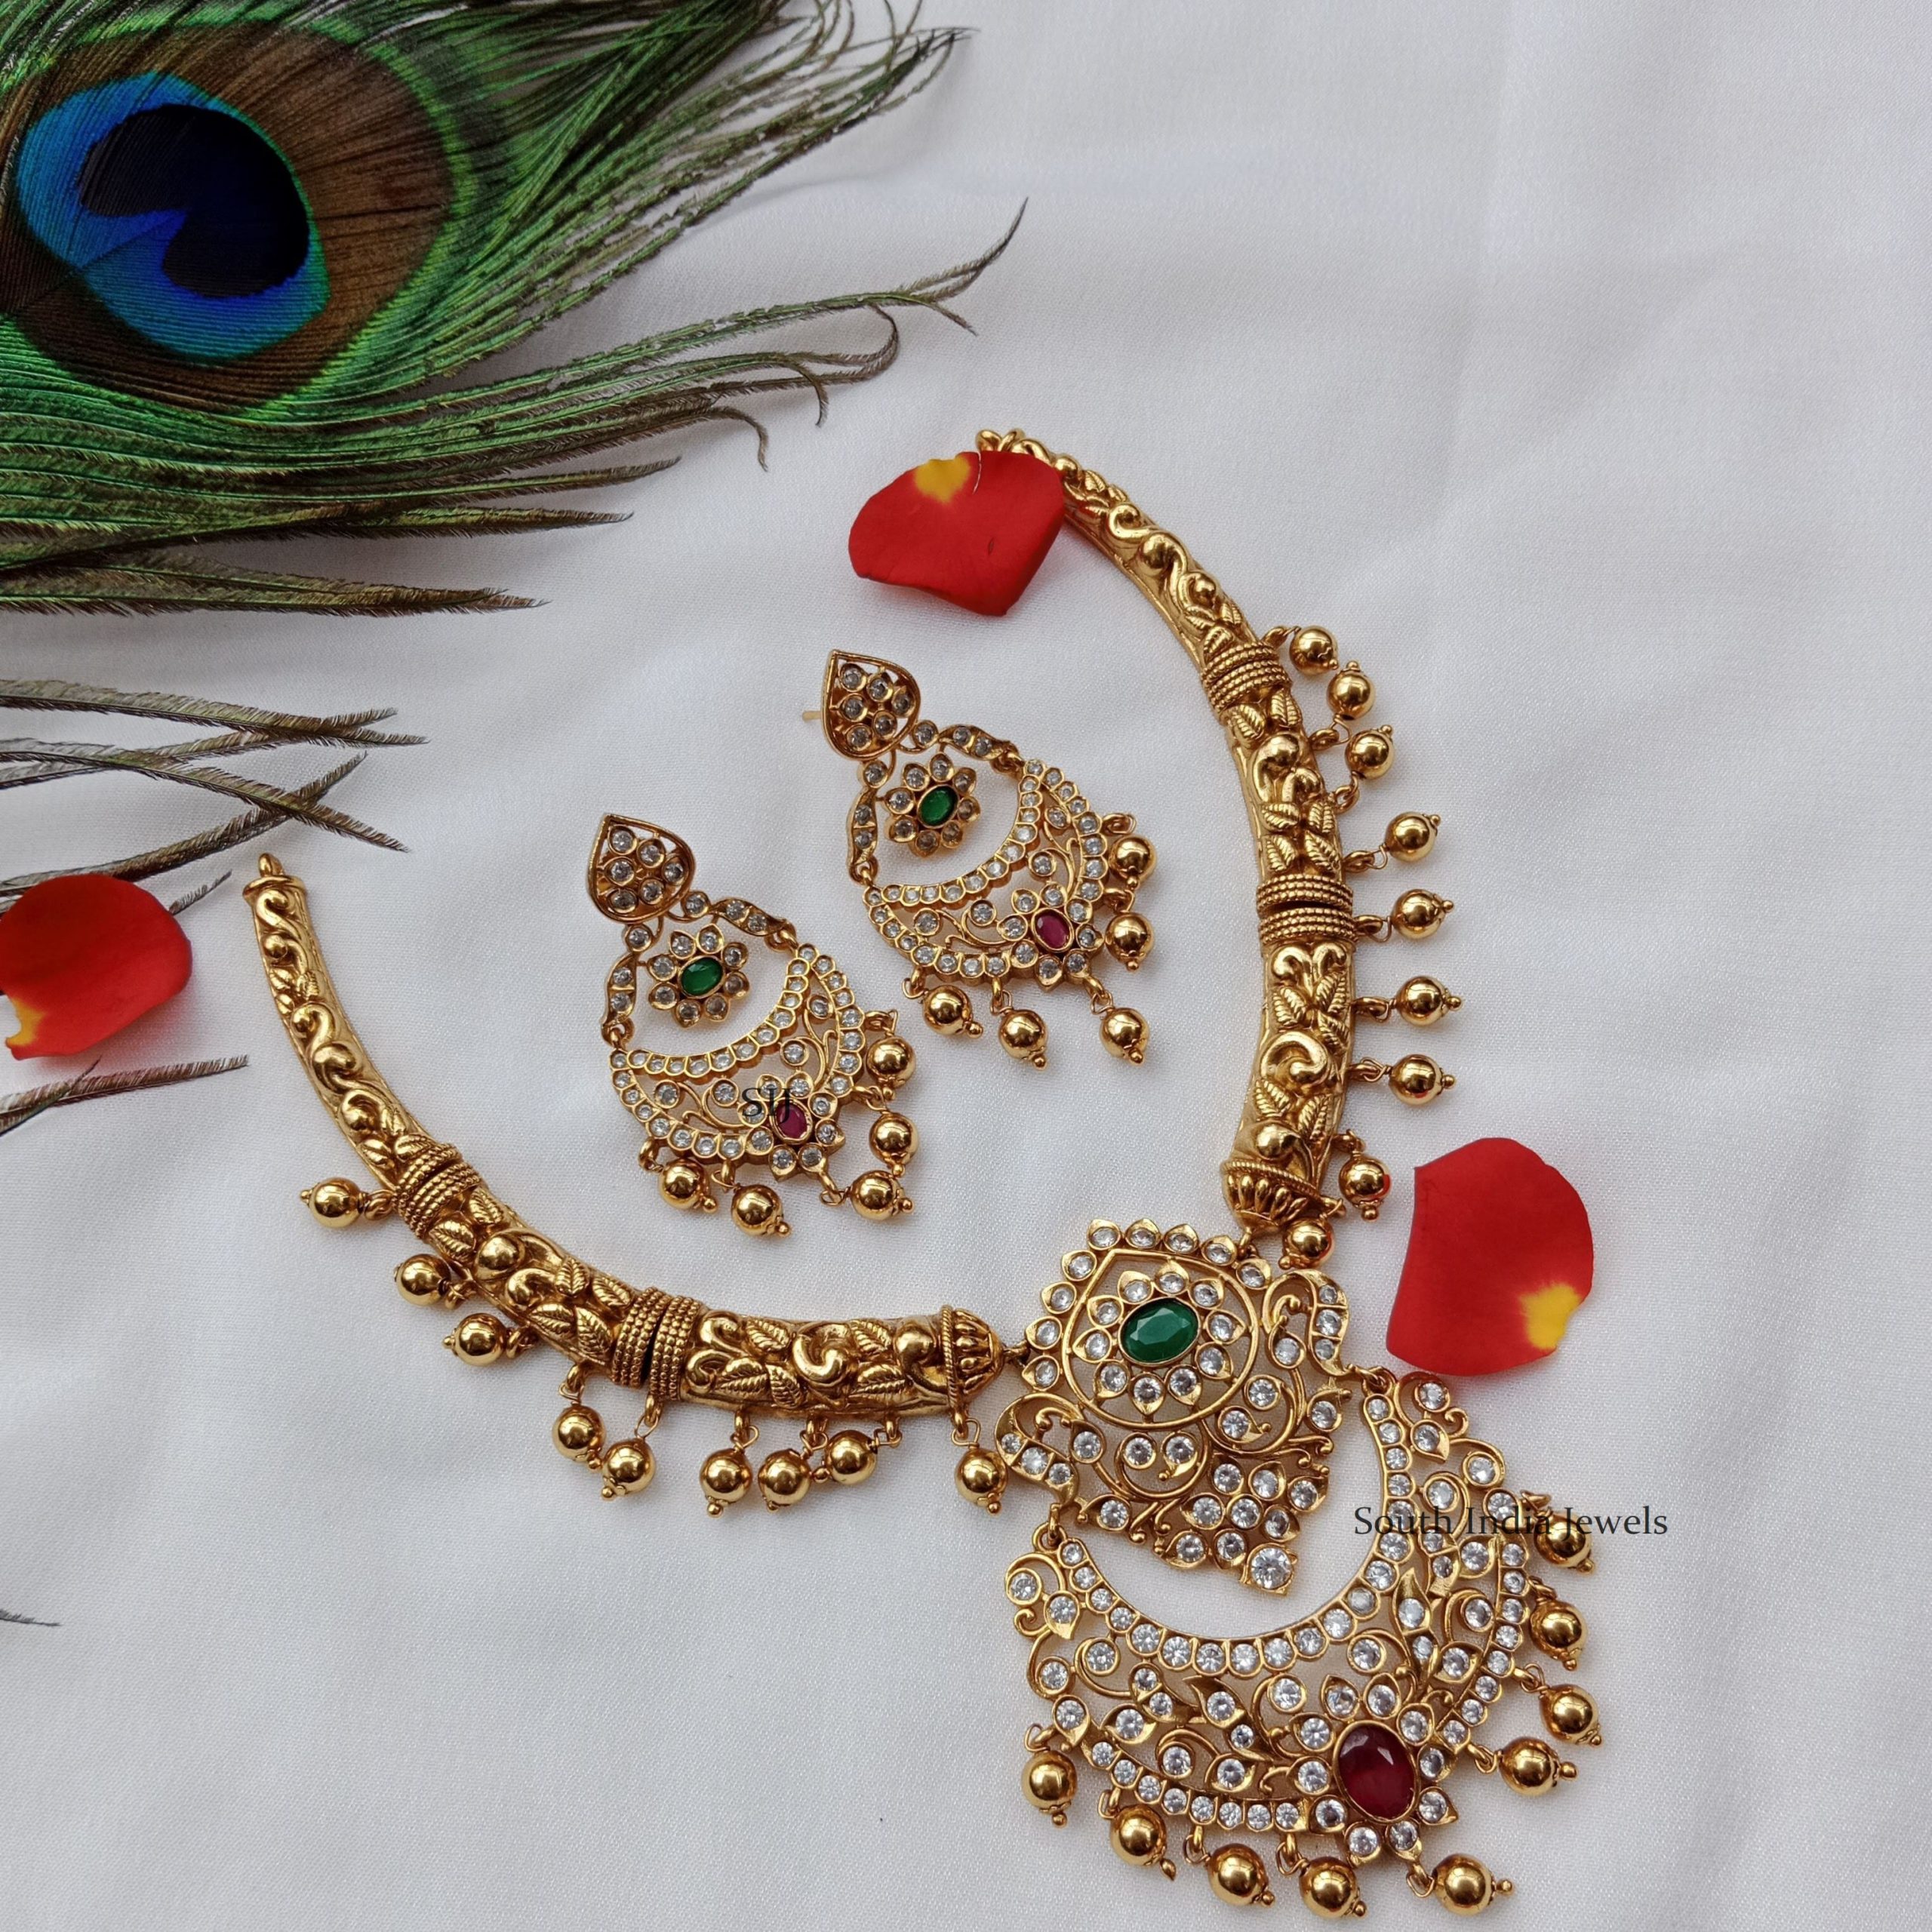 Attractive Chandbali Design Necklace